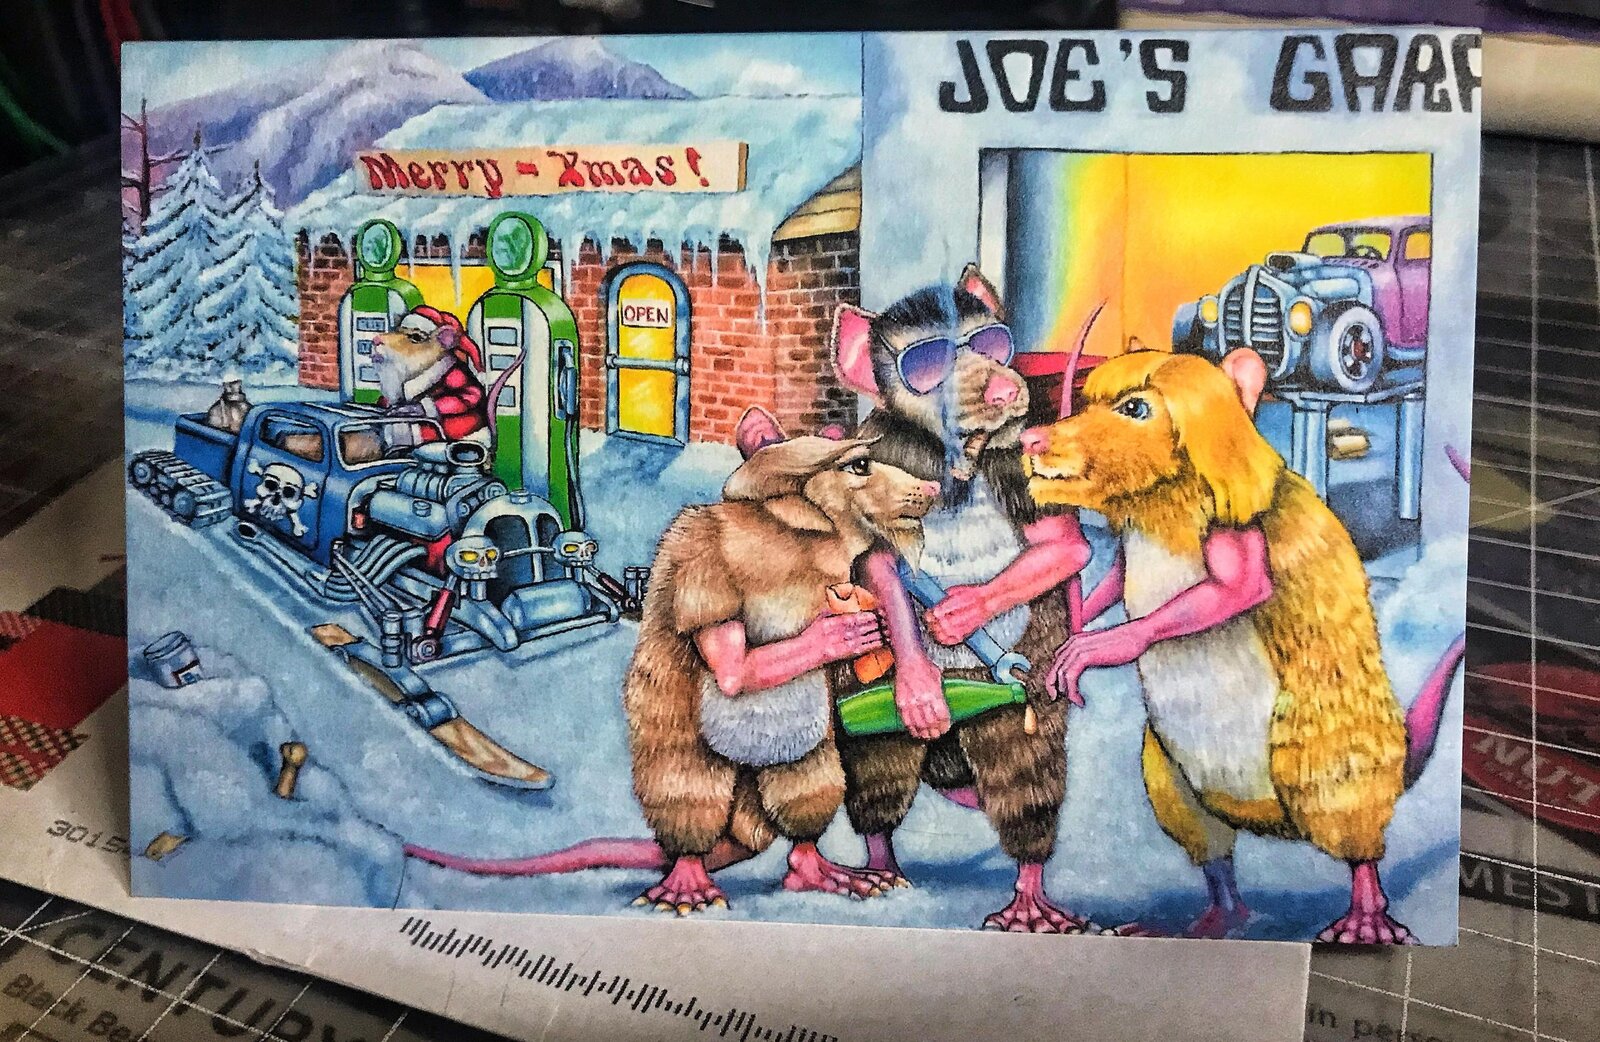 Rats at Joes Garage Christmas Card.jpg